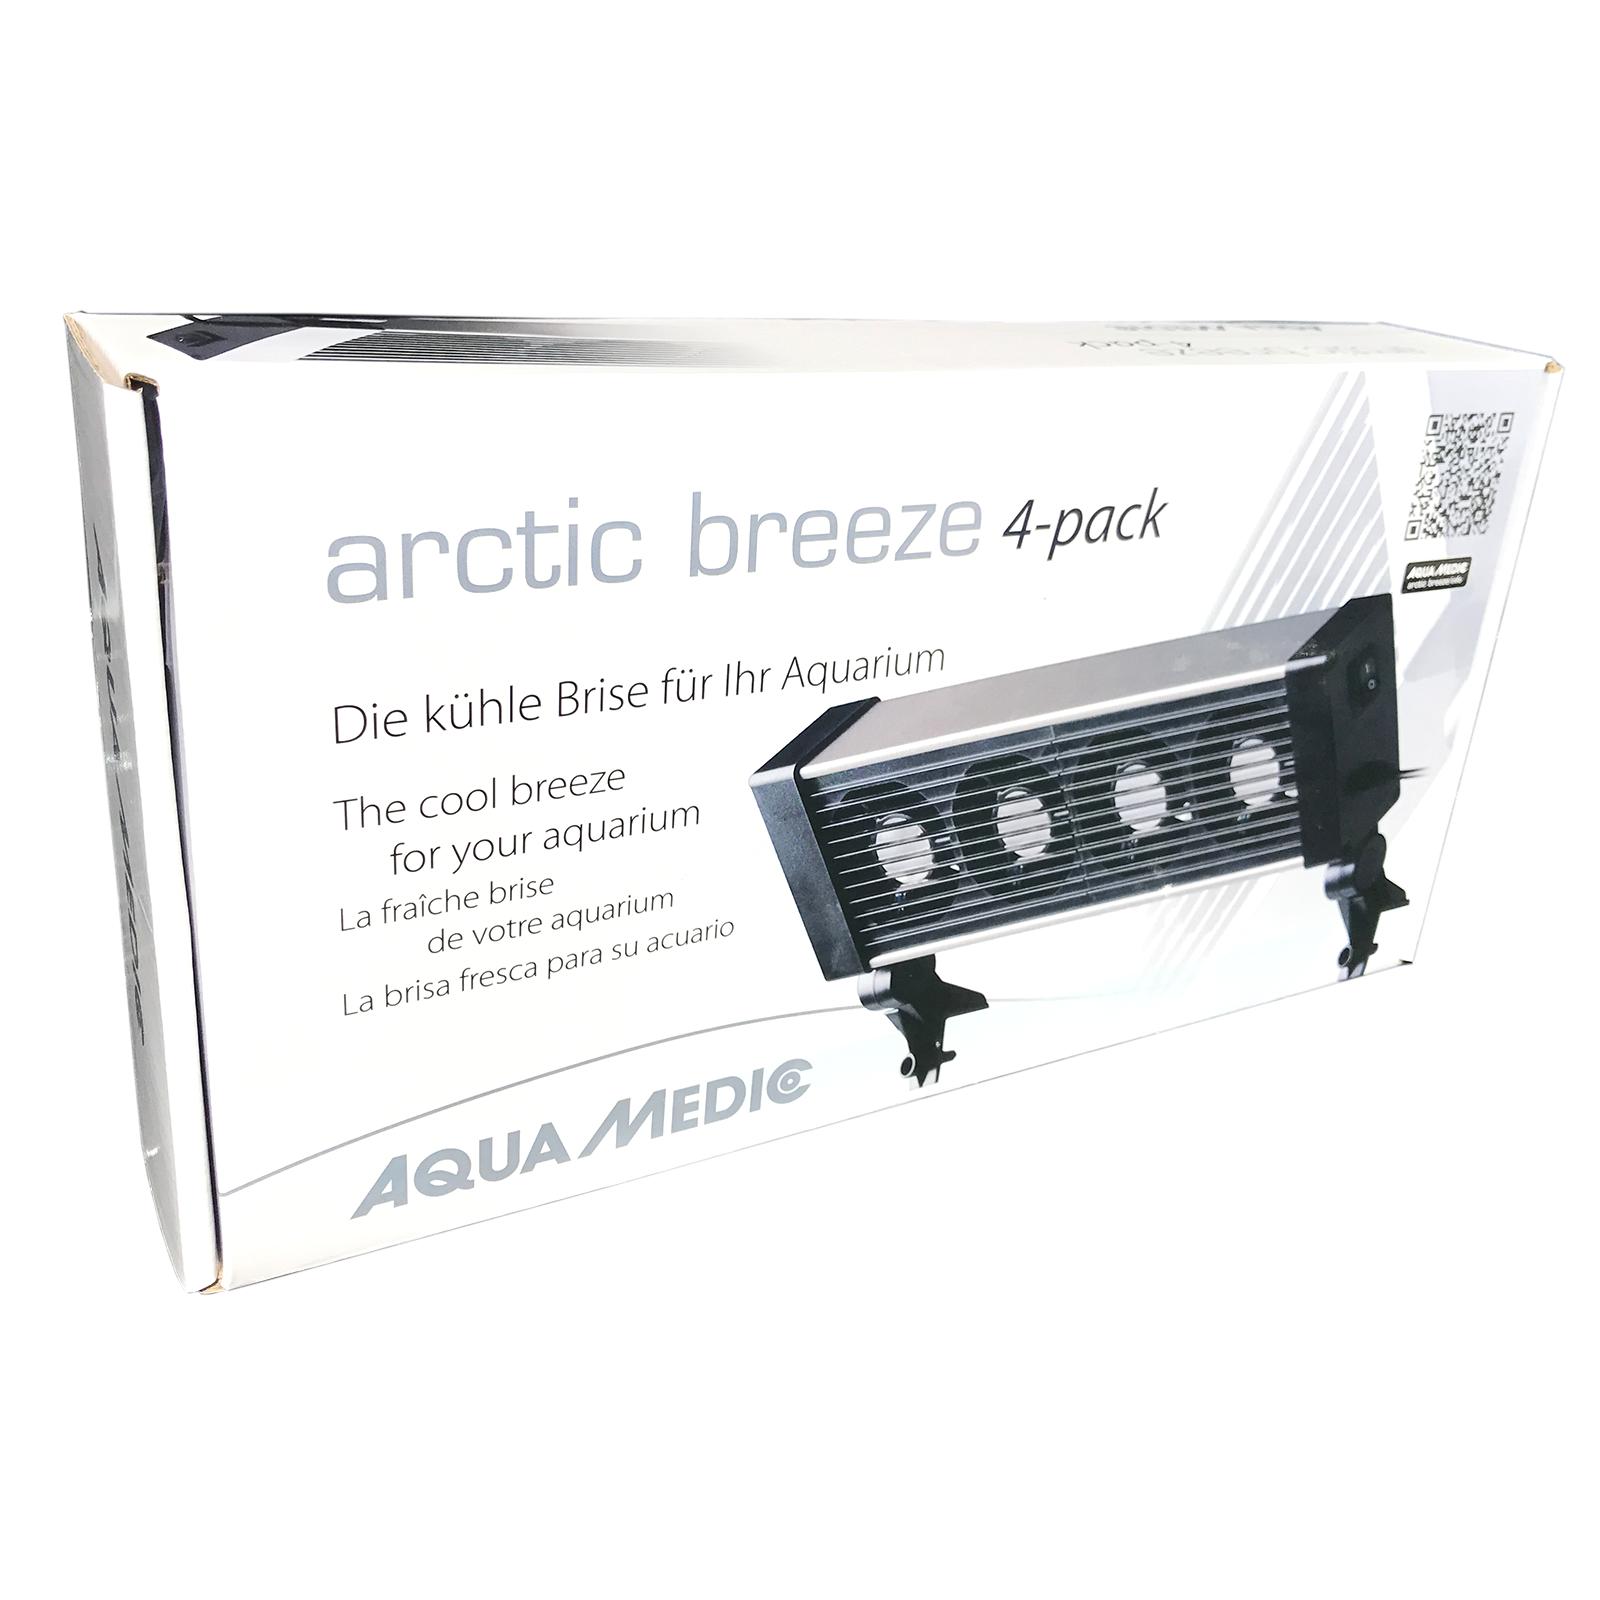 Вентилятор для аквариума Aqua Medic arctic breeze 4-pack 56555